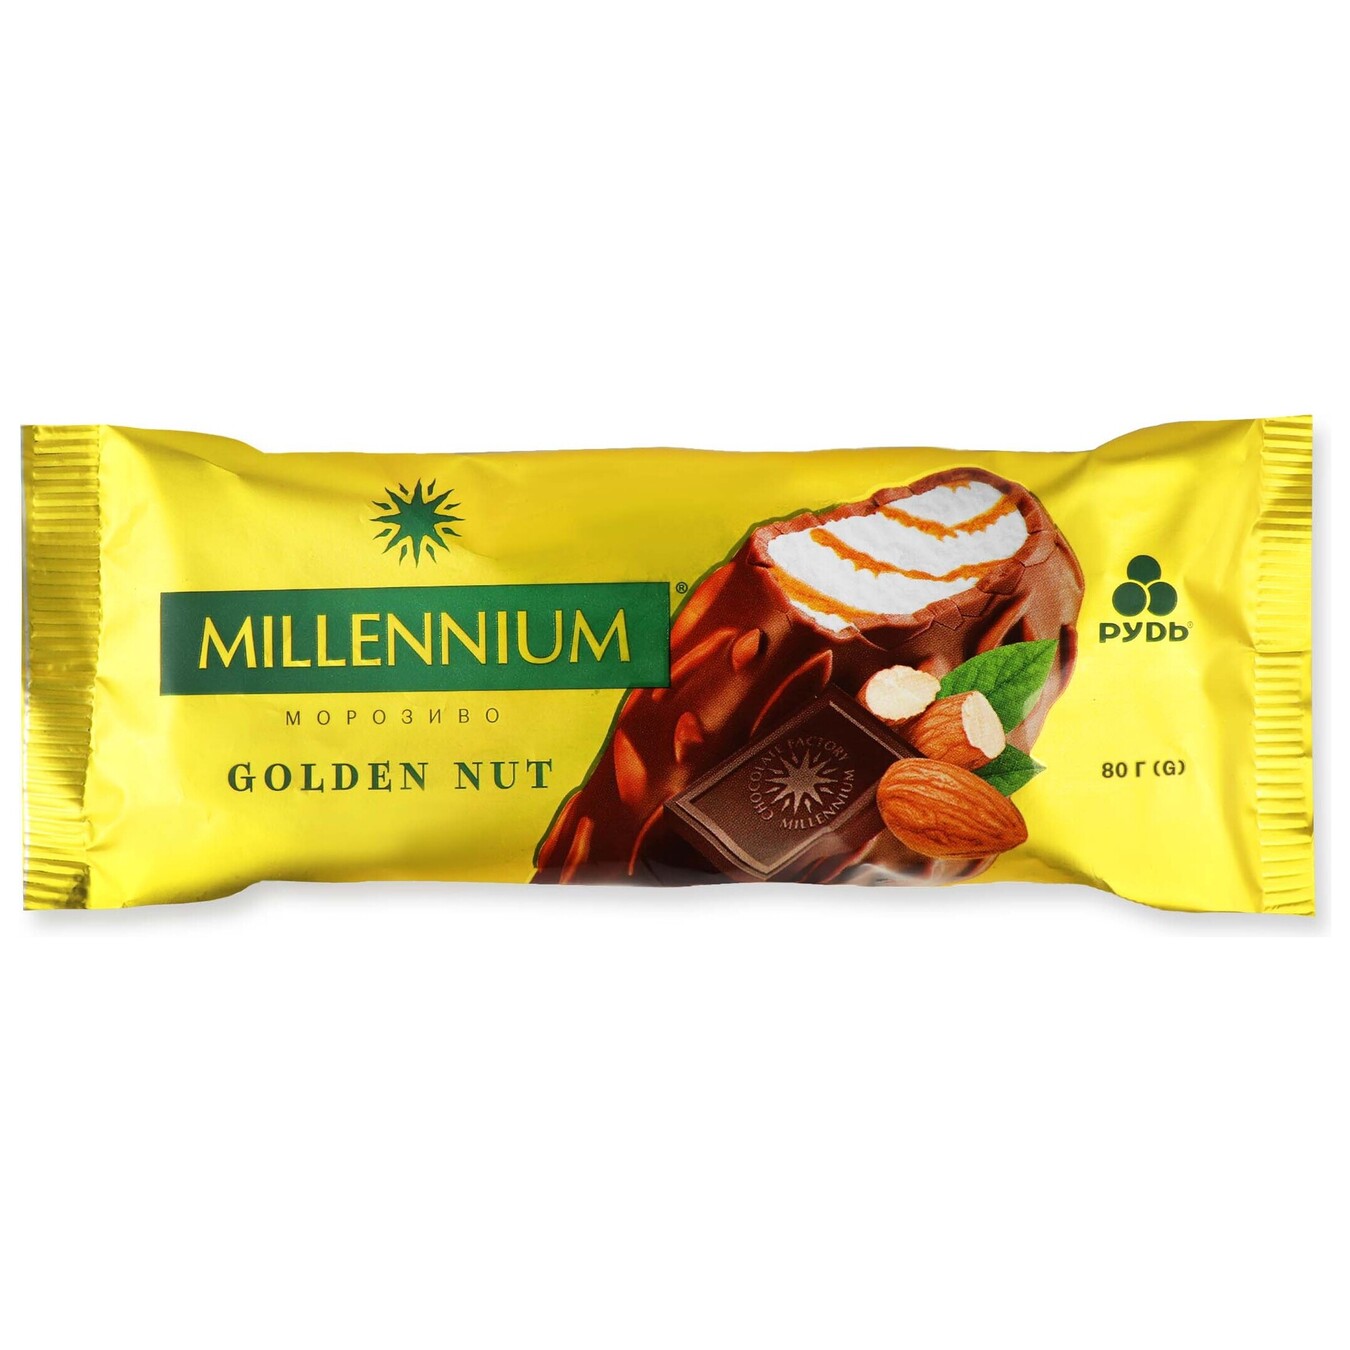 Мороженое Millennium Golden Nut 80г